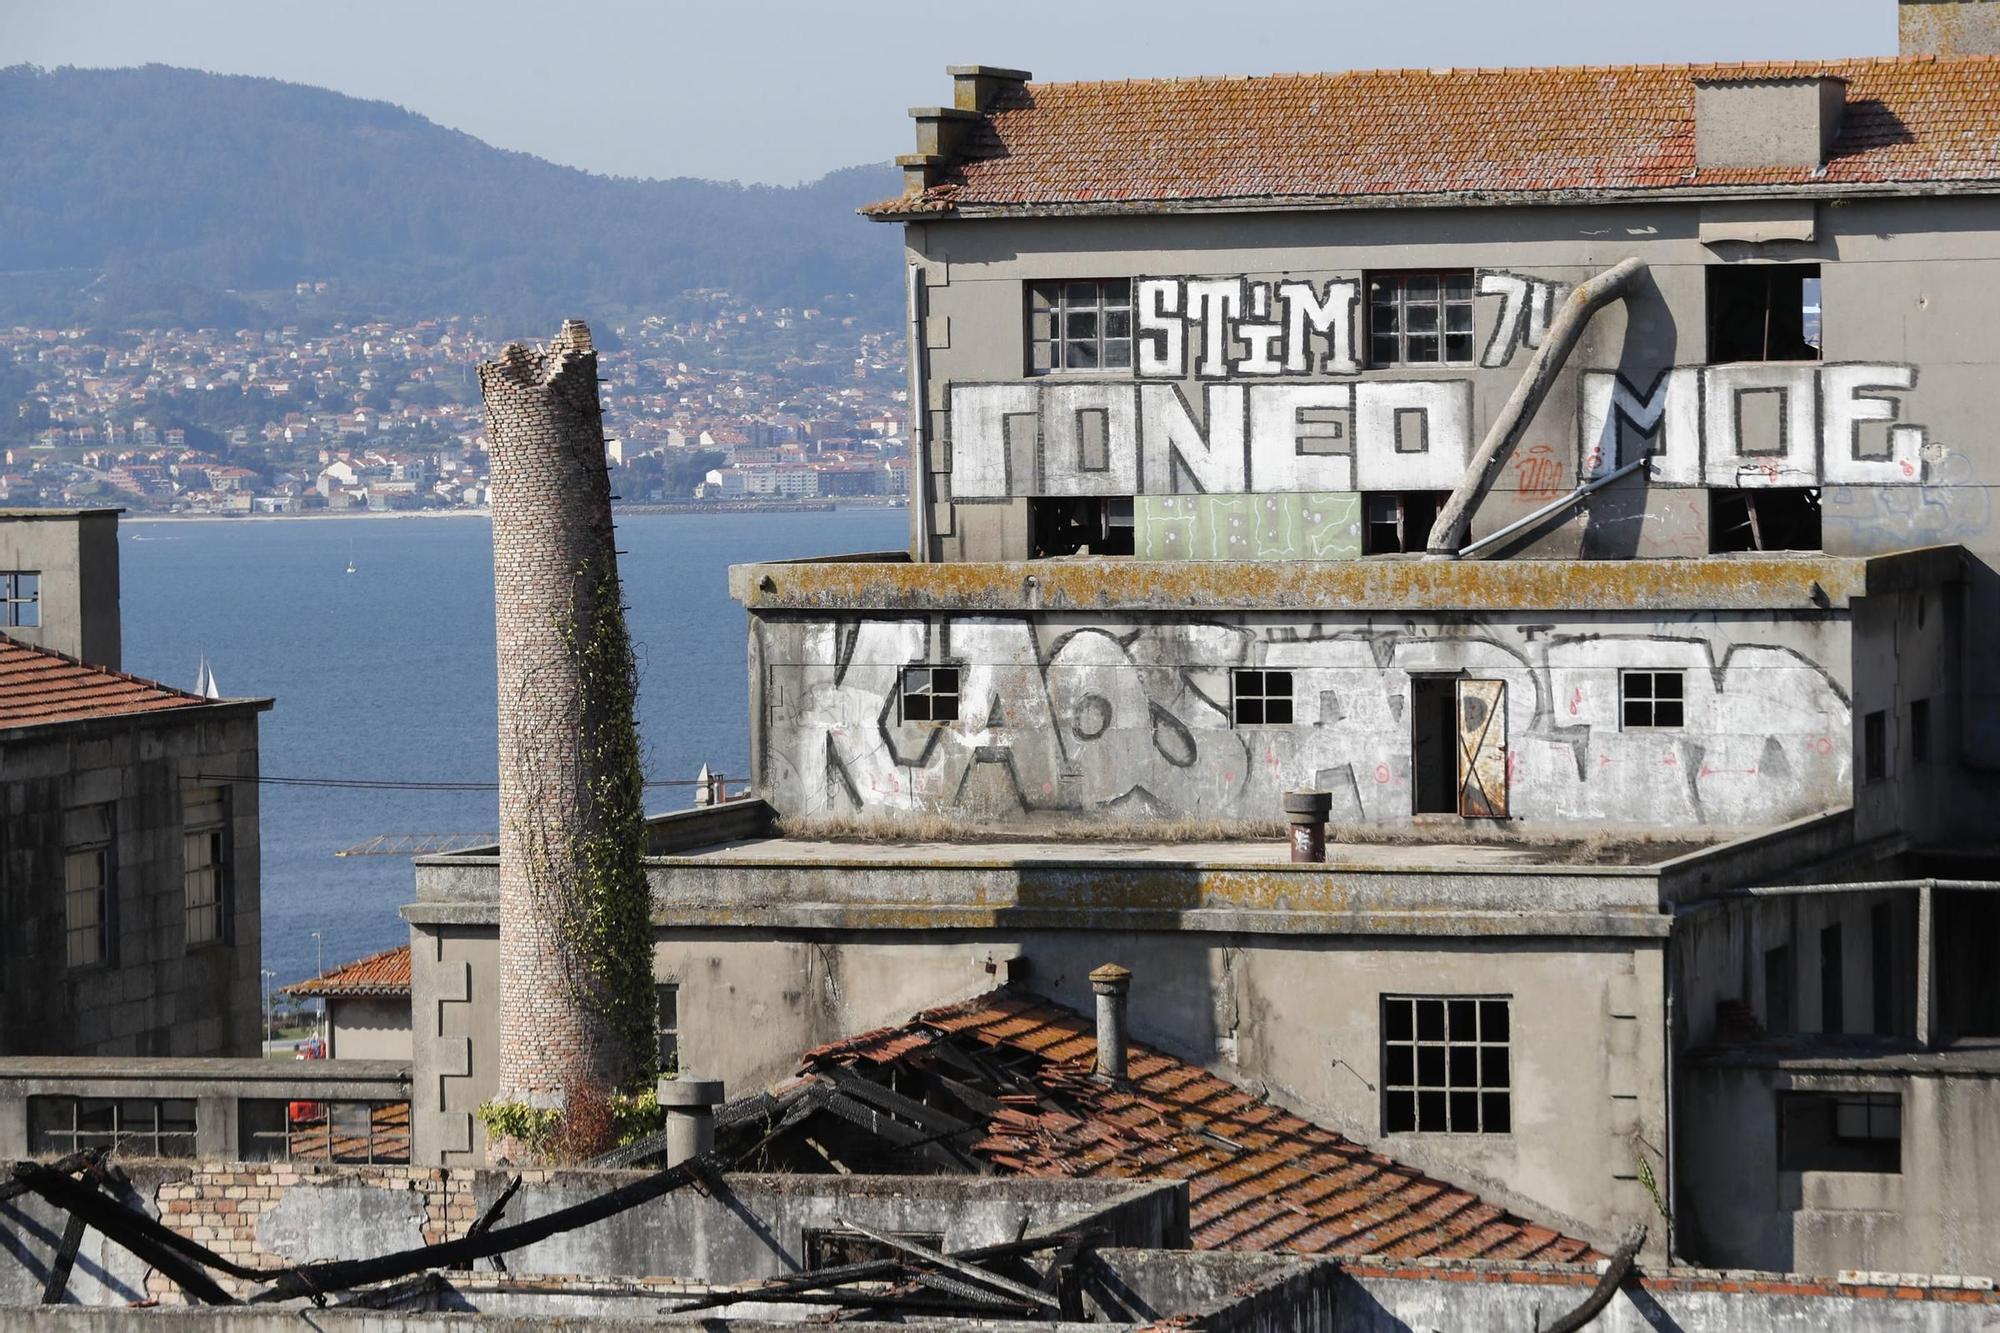 Vista del estado de abandono de la chimenea de la panificadora en 2020 José Lores.jpg